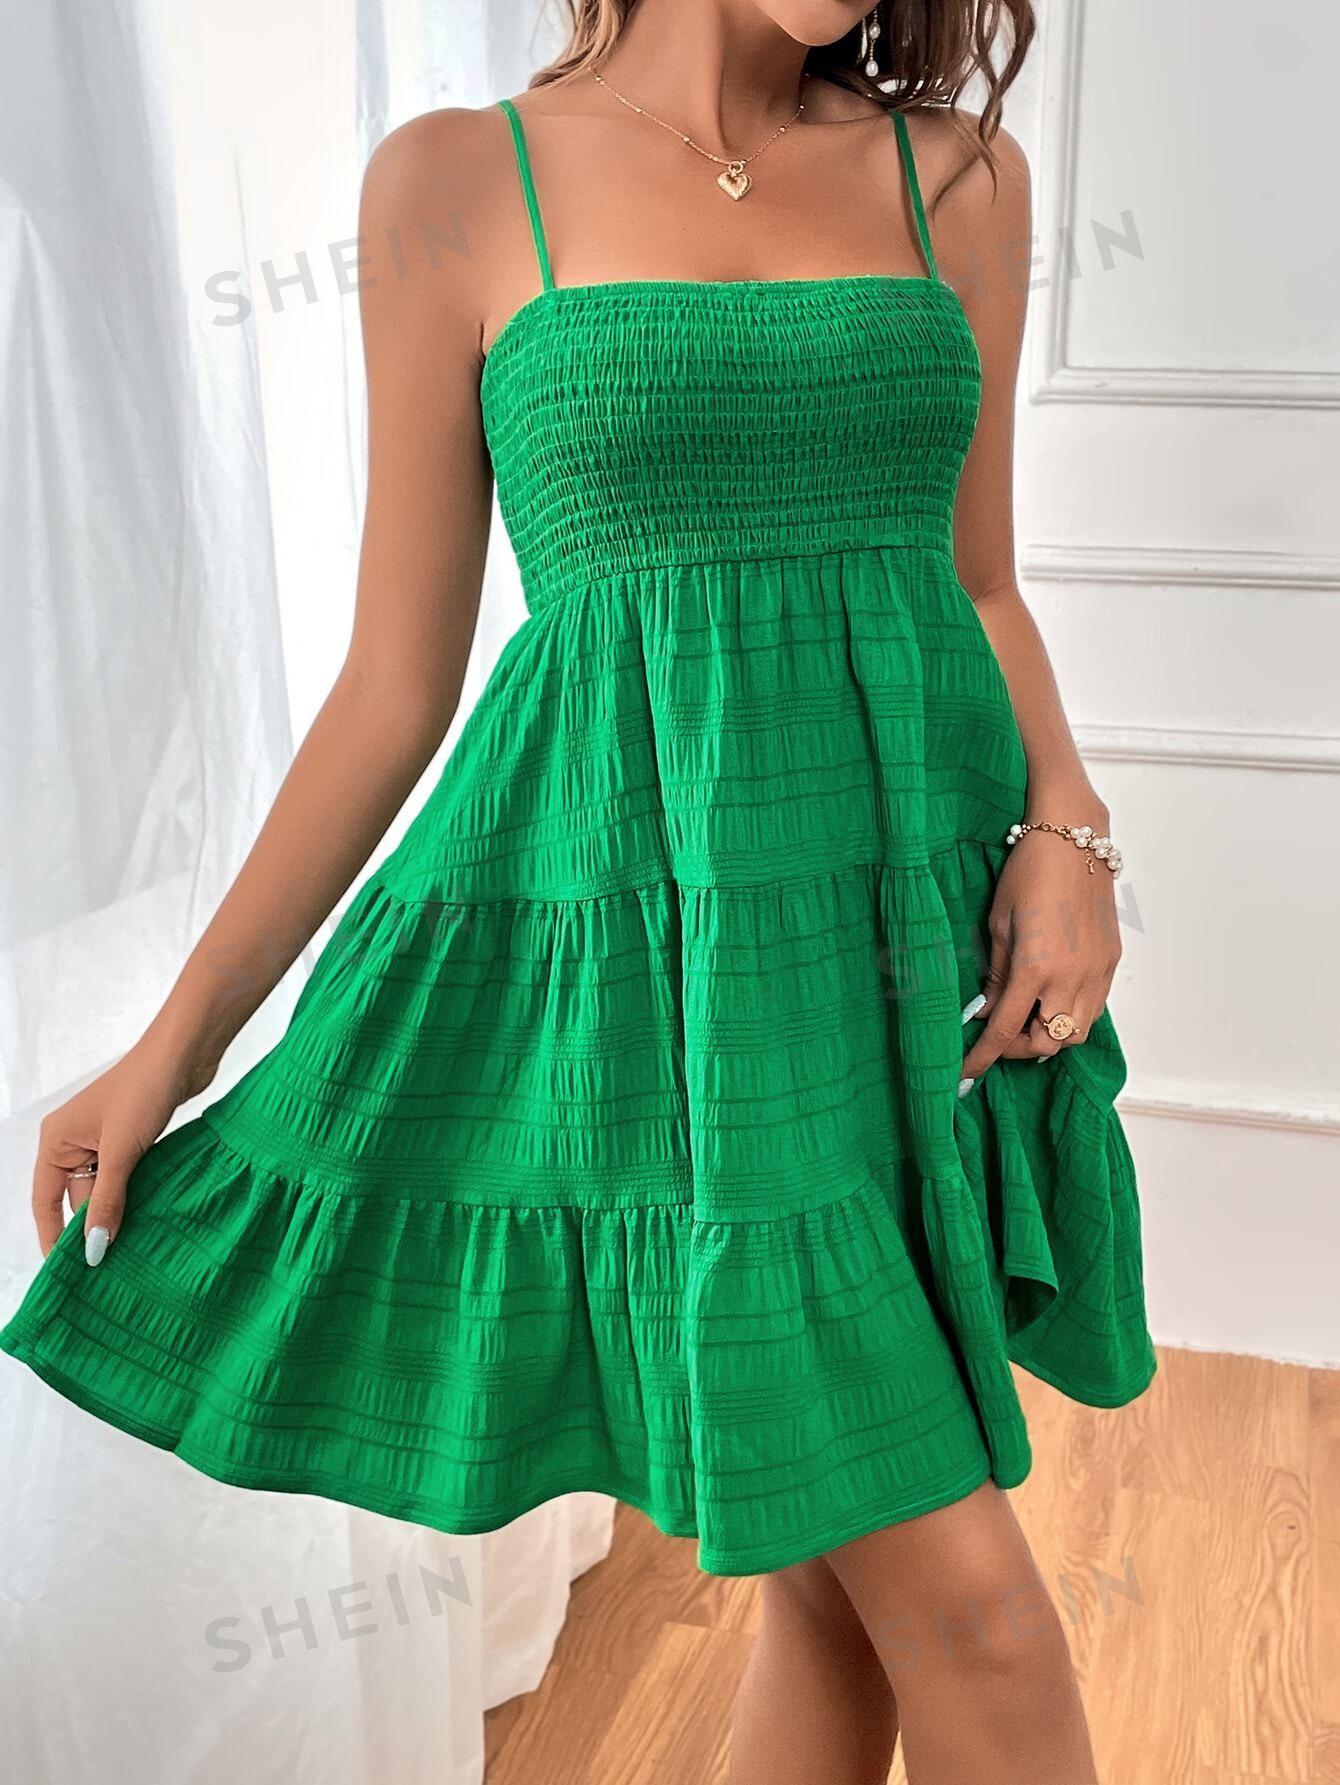 SHEIN WYWH Женское однотонное платье на тонких бретельках с оборками и подолом, зеленый фото